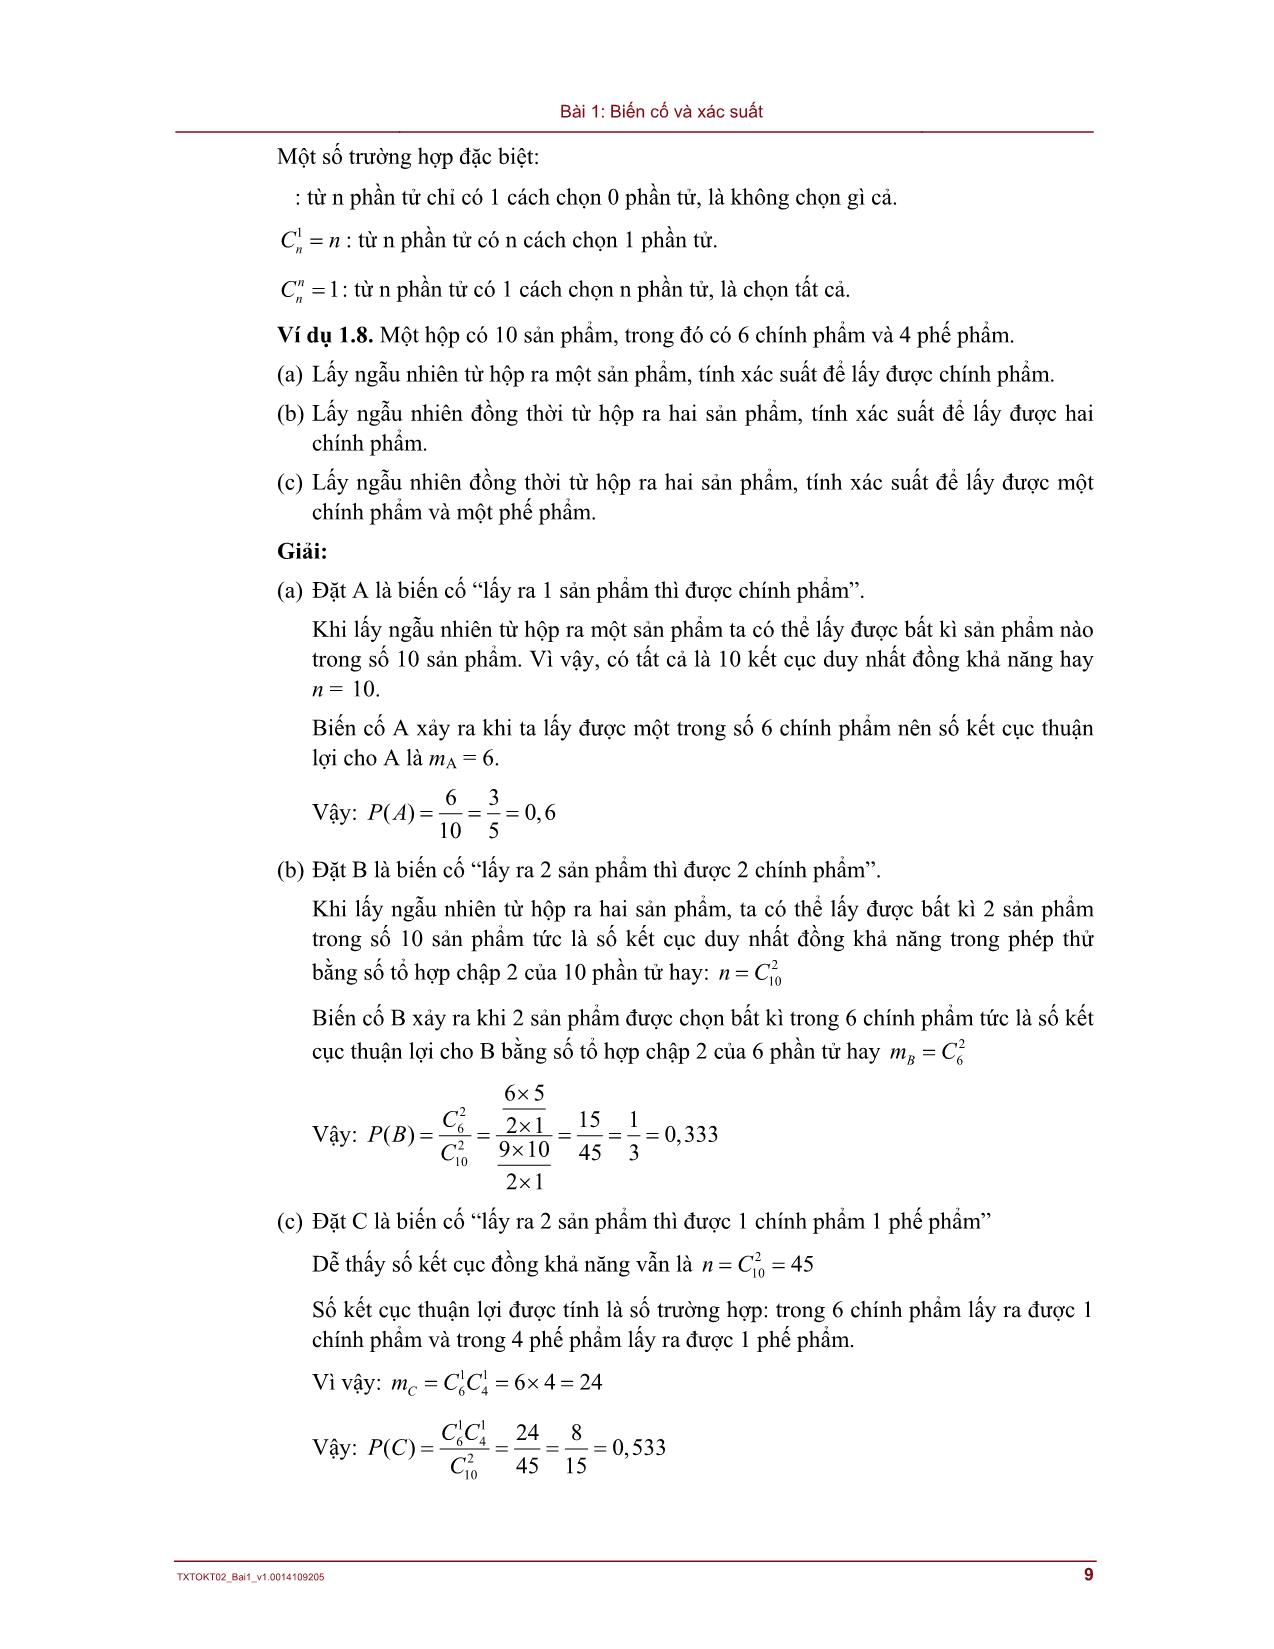 Bài giảng Lý thuyết xác suất và thống kê - Bài 1: Biến cố và xác suất trang 9